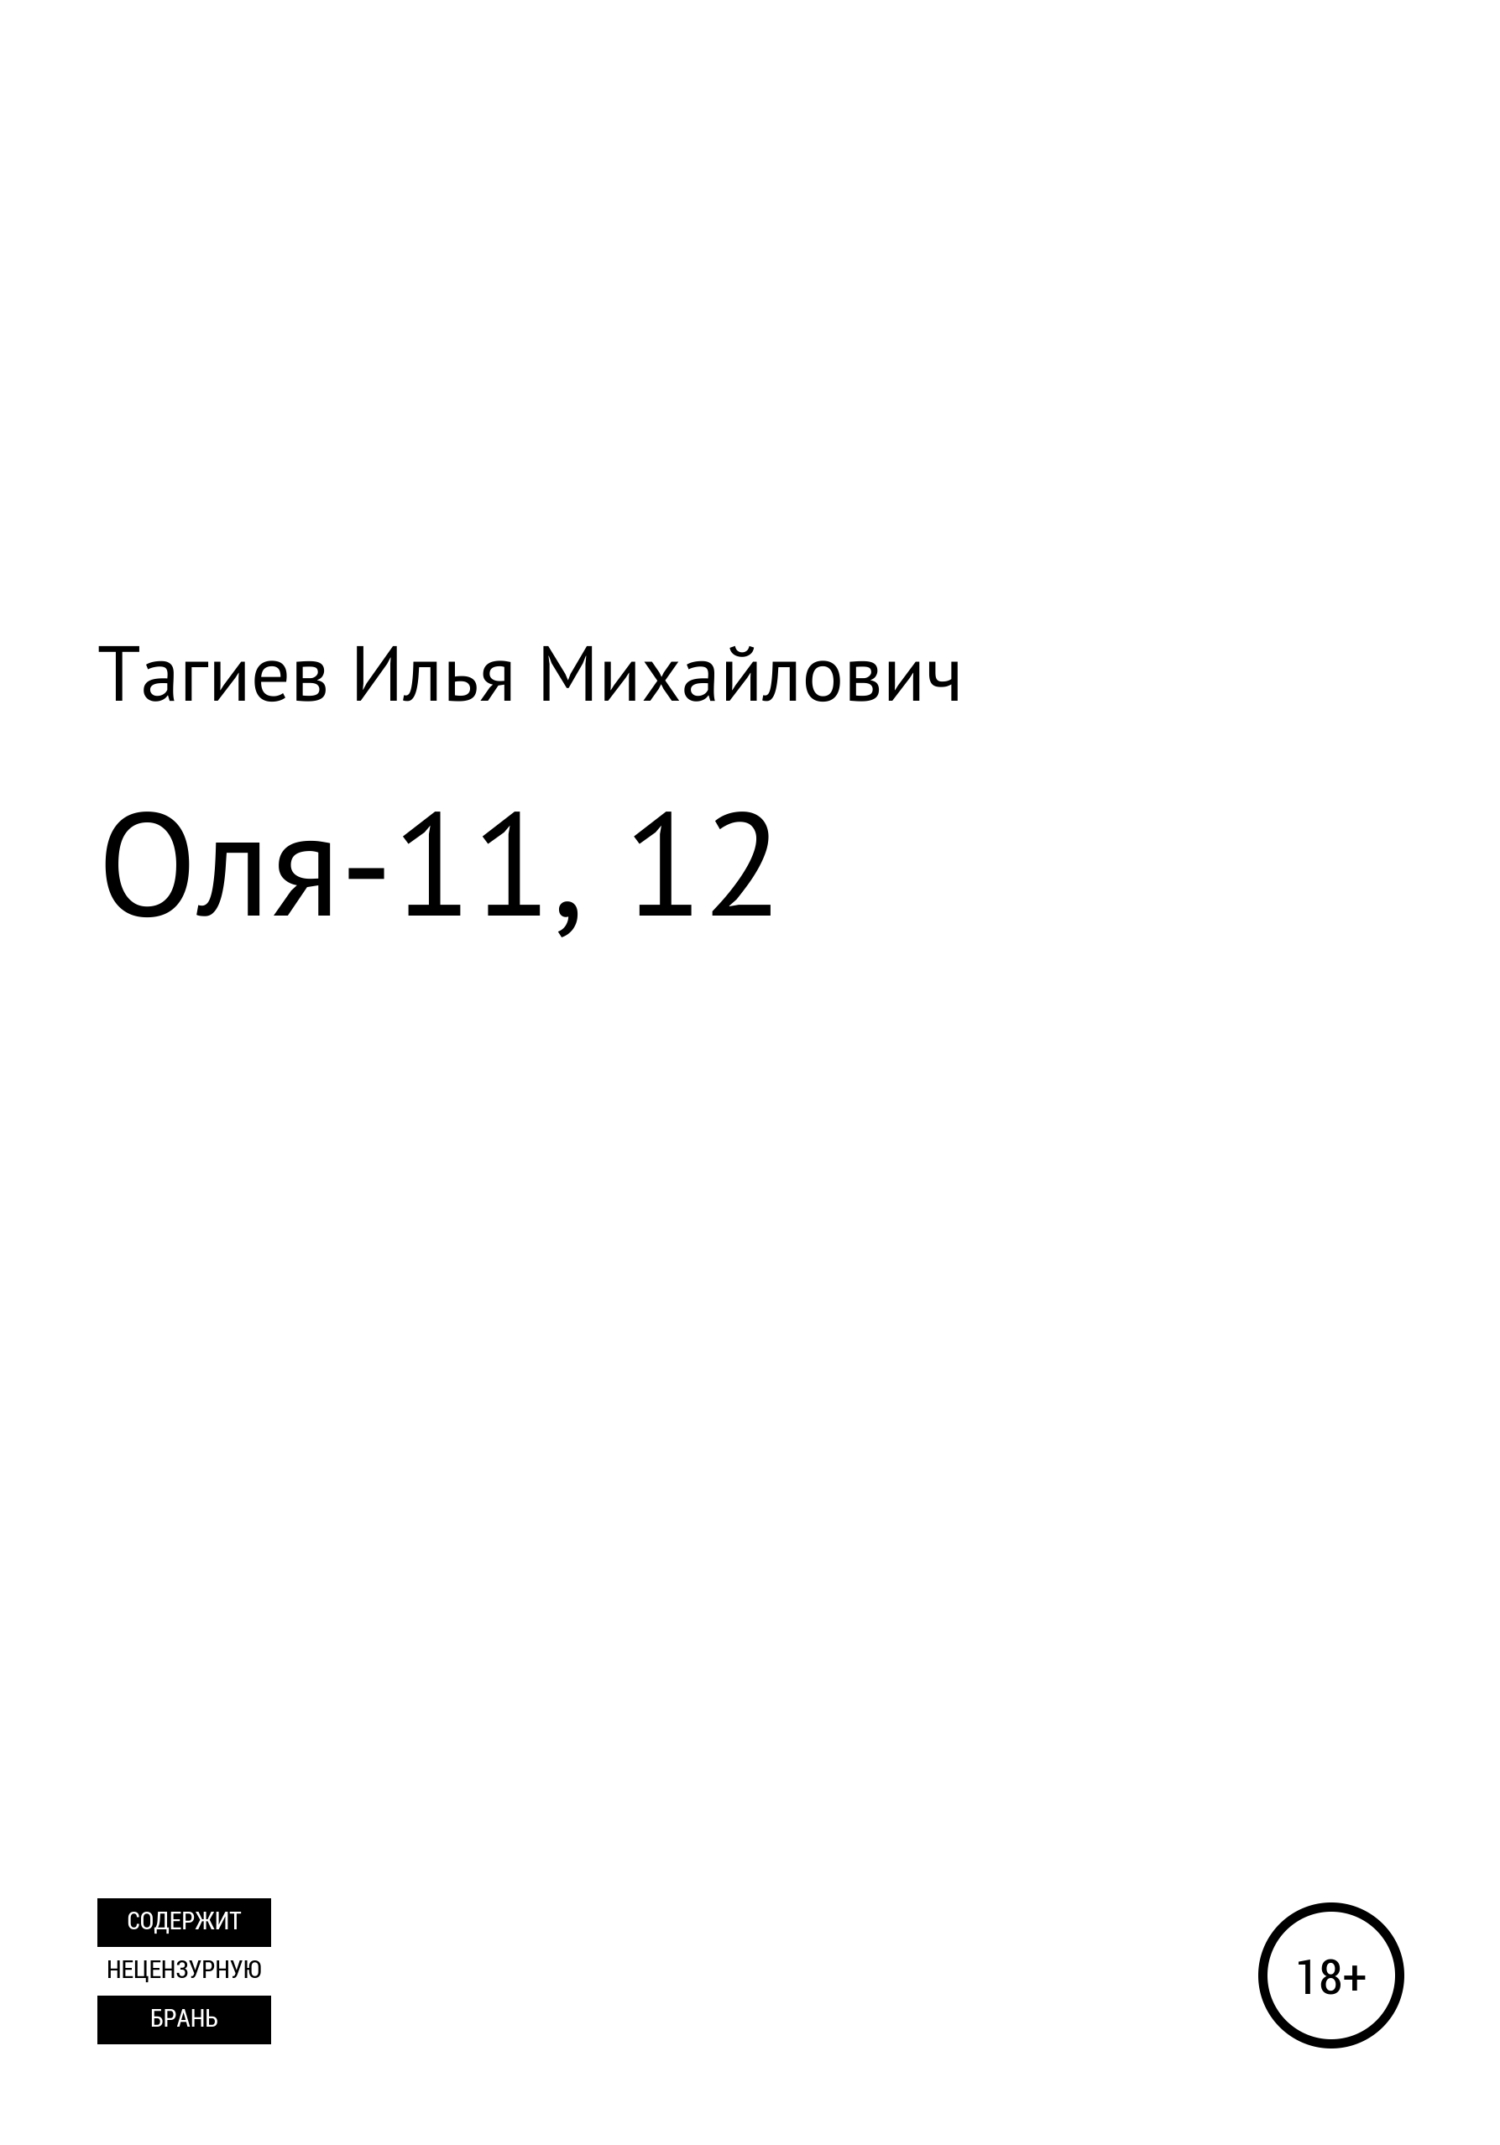 Оля-11, 12